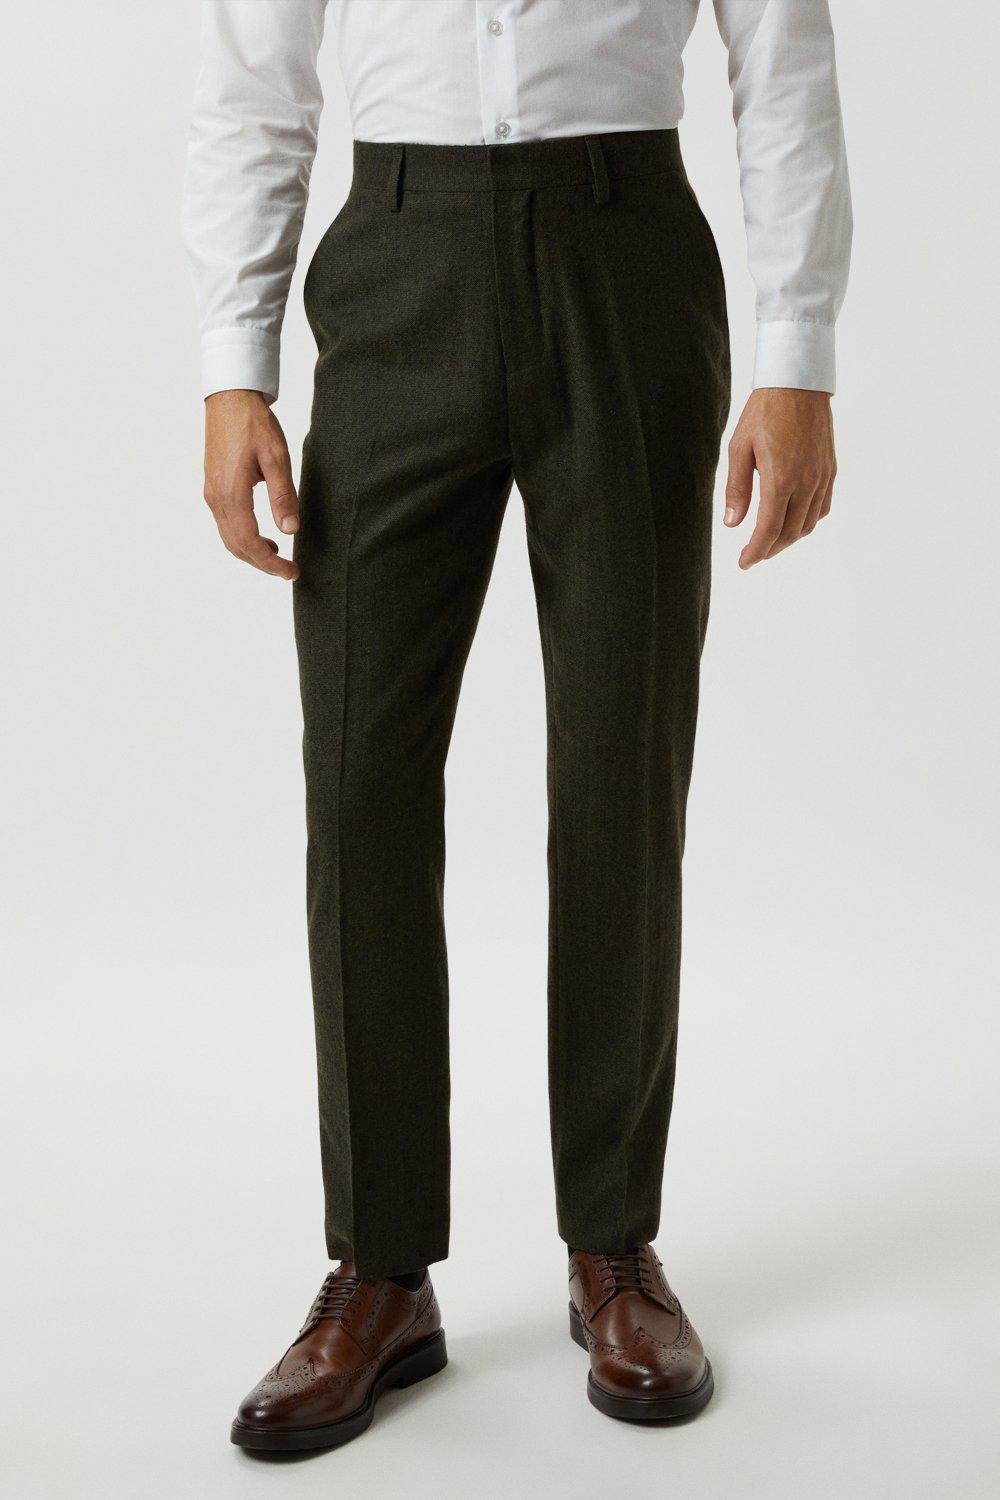 Suits | Slim Fit Khaki Basketweave Tweed Suit Trousers | Burton